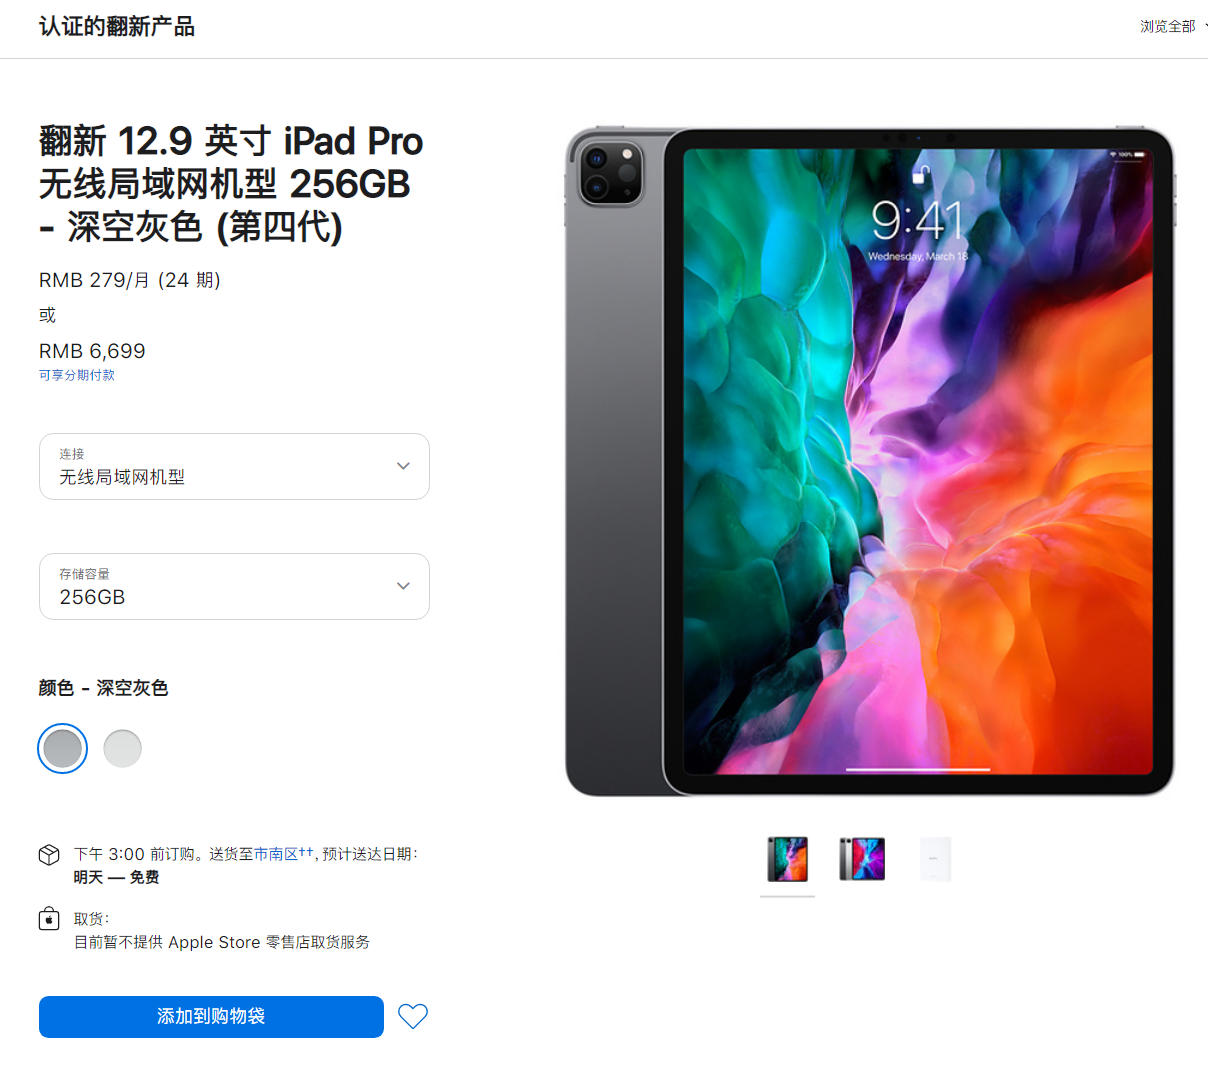 苹果中国上架 2020 款 iPad Pro 12.9 英寸翻新机：256GB 版售 6699